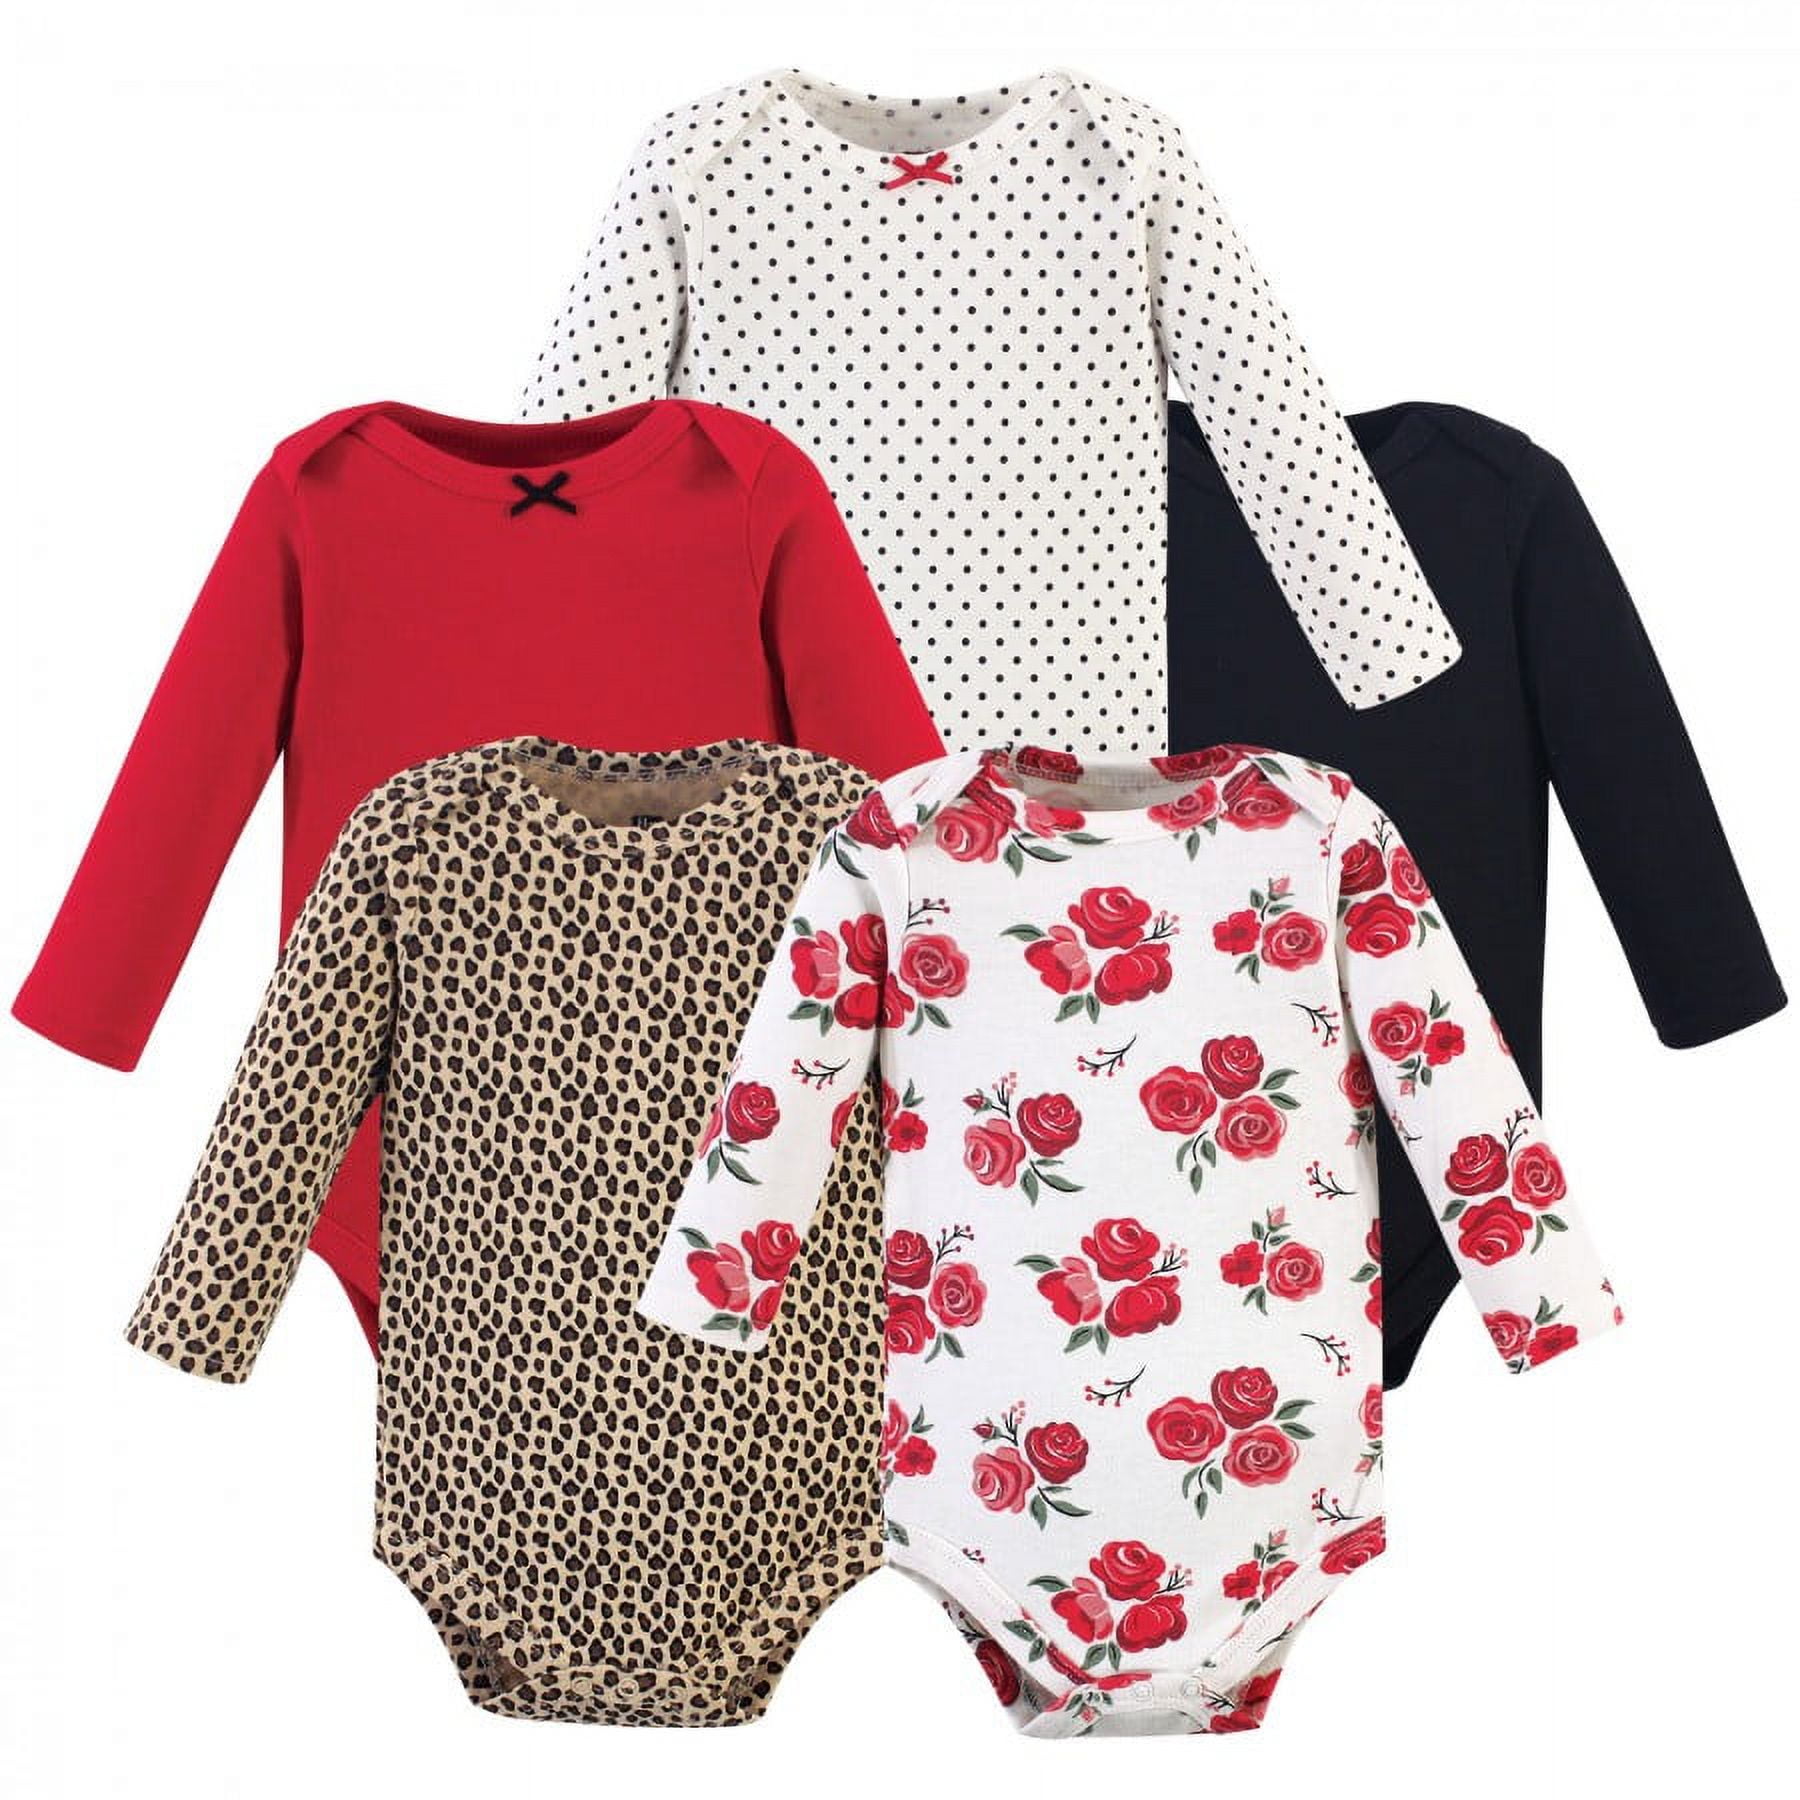 Hudson Baby Infant Girl Cotton Long-Sleeve Bodysuits 5pk, Basic